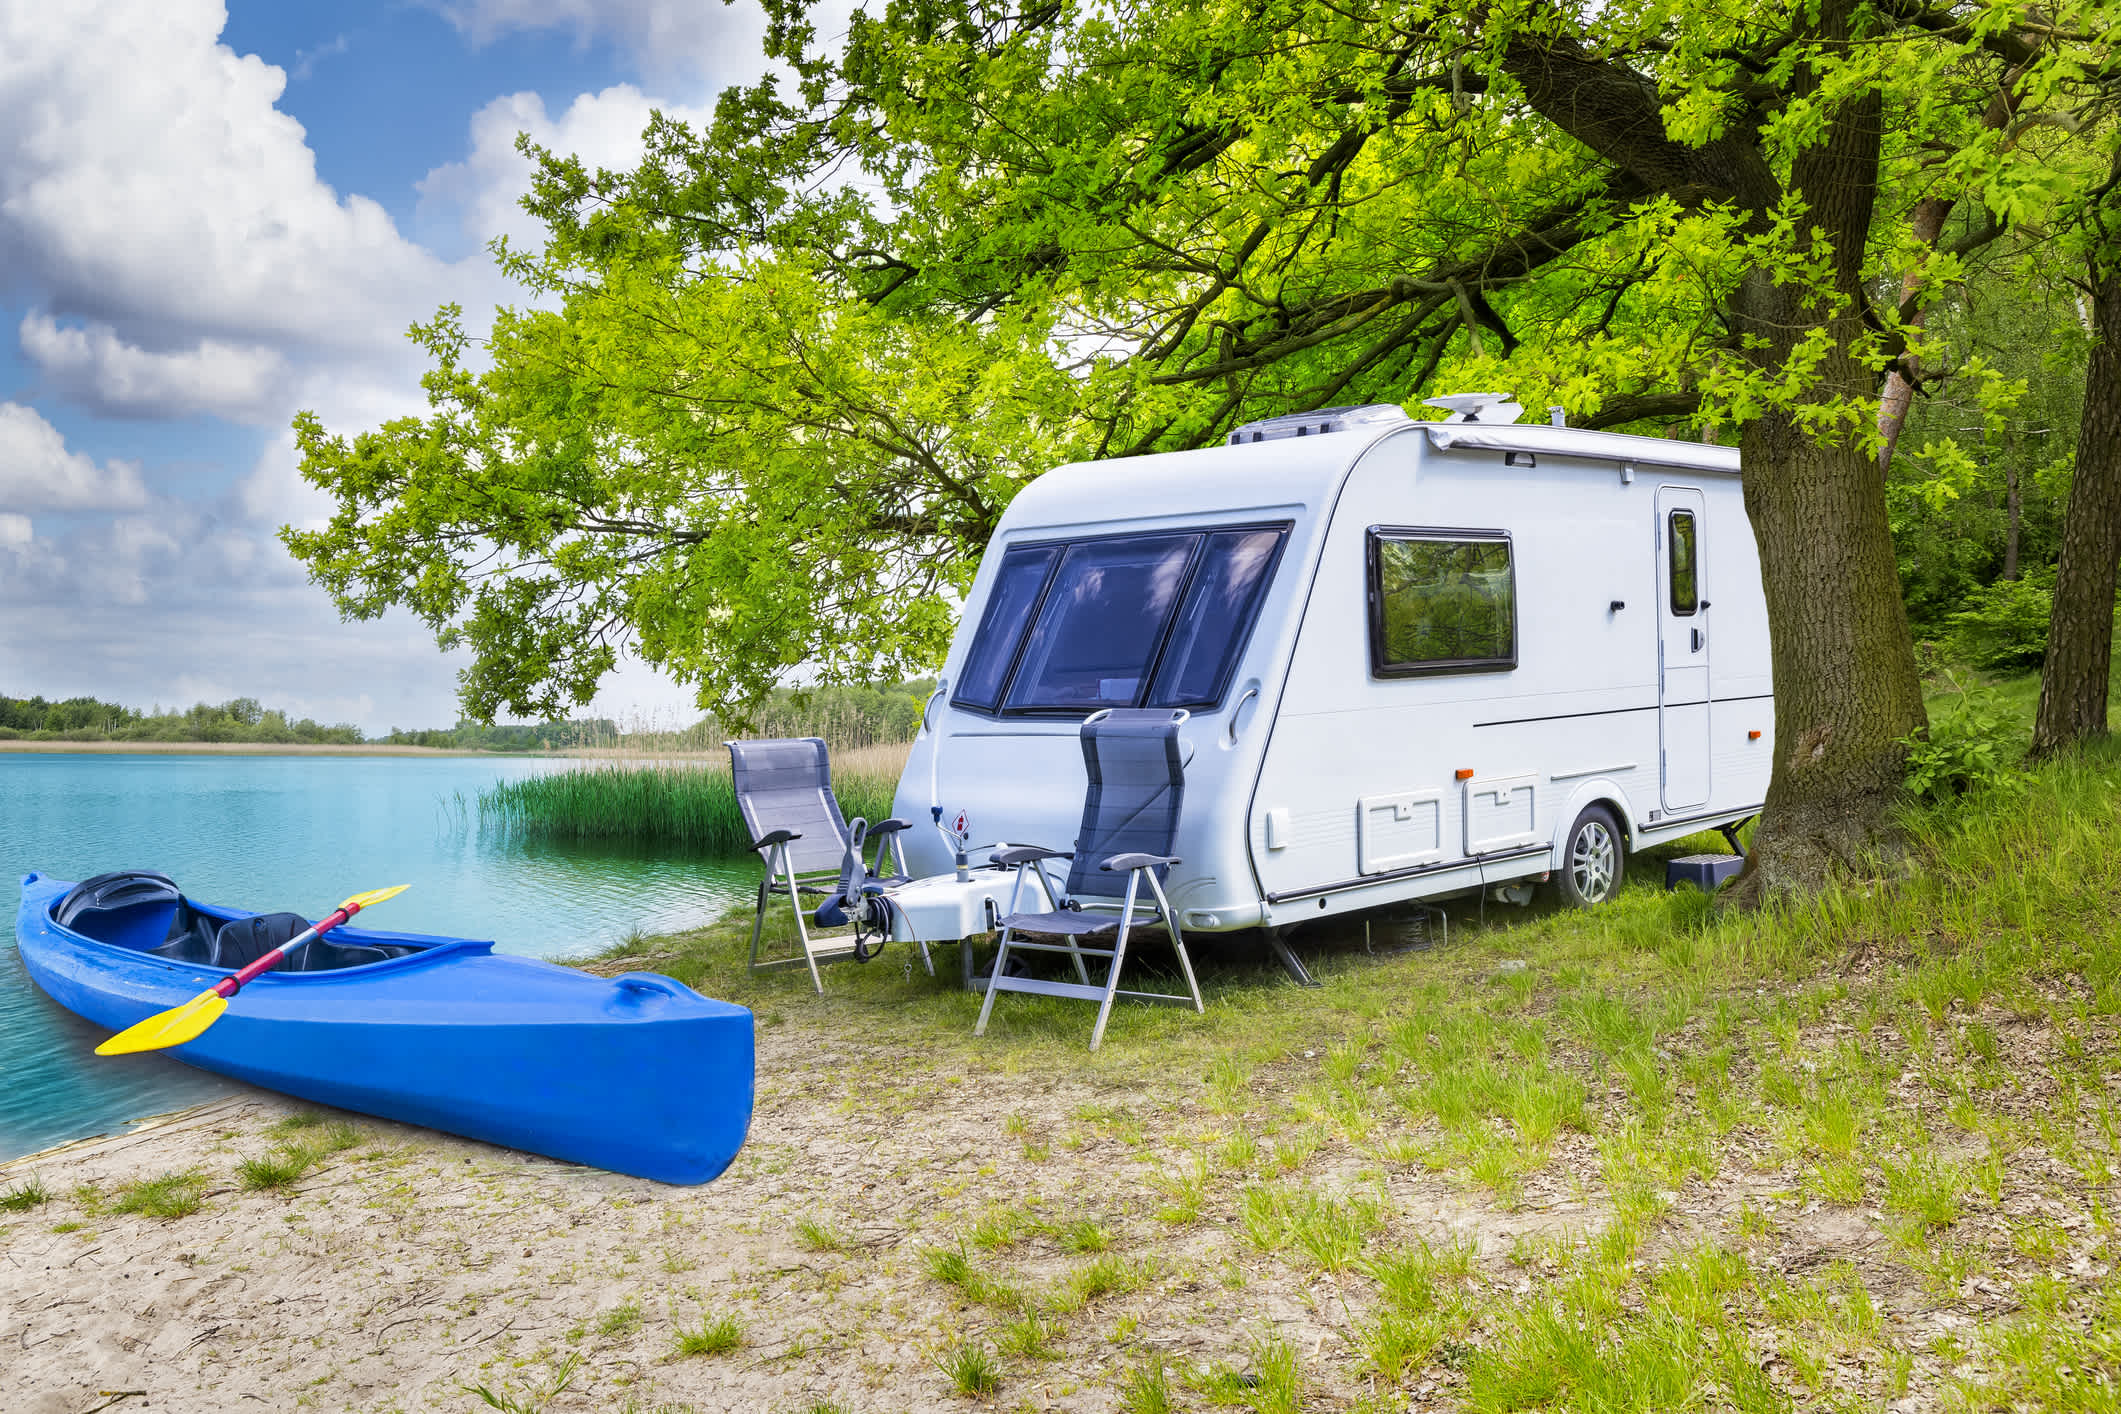 Vacances d'été en camping-car au bord d'un lac

